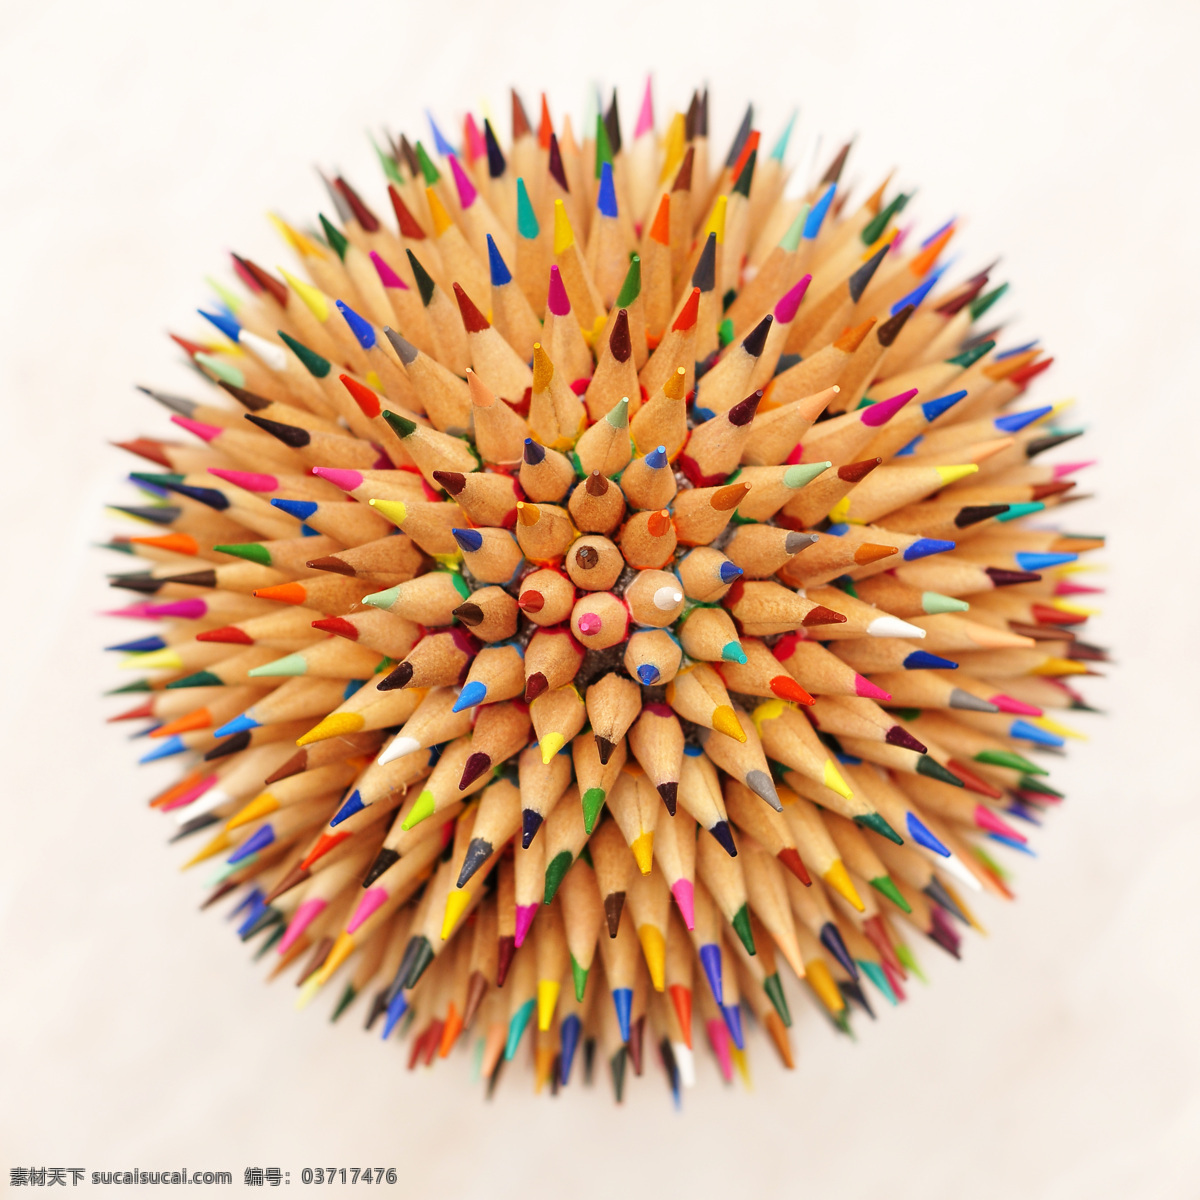 花 状 铅笔 笔 绘画笔 彩色铅笔 文具 学习用品 办公学习 生活百科